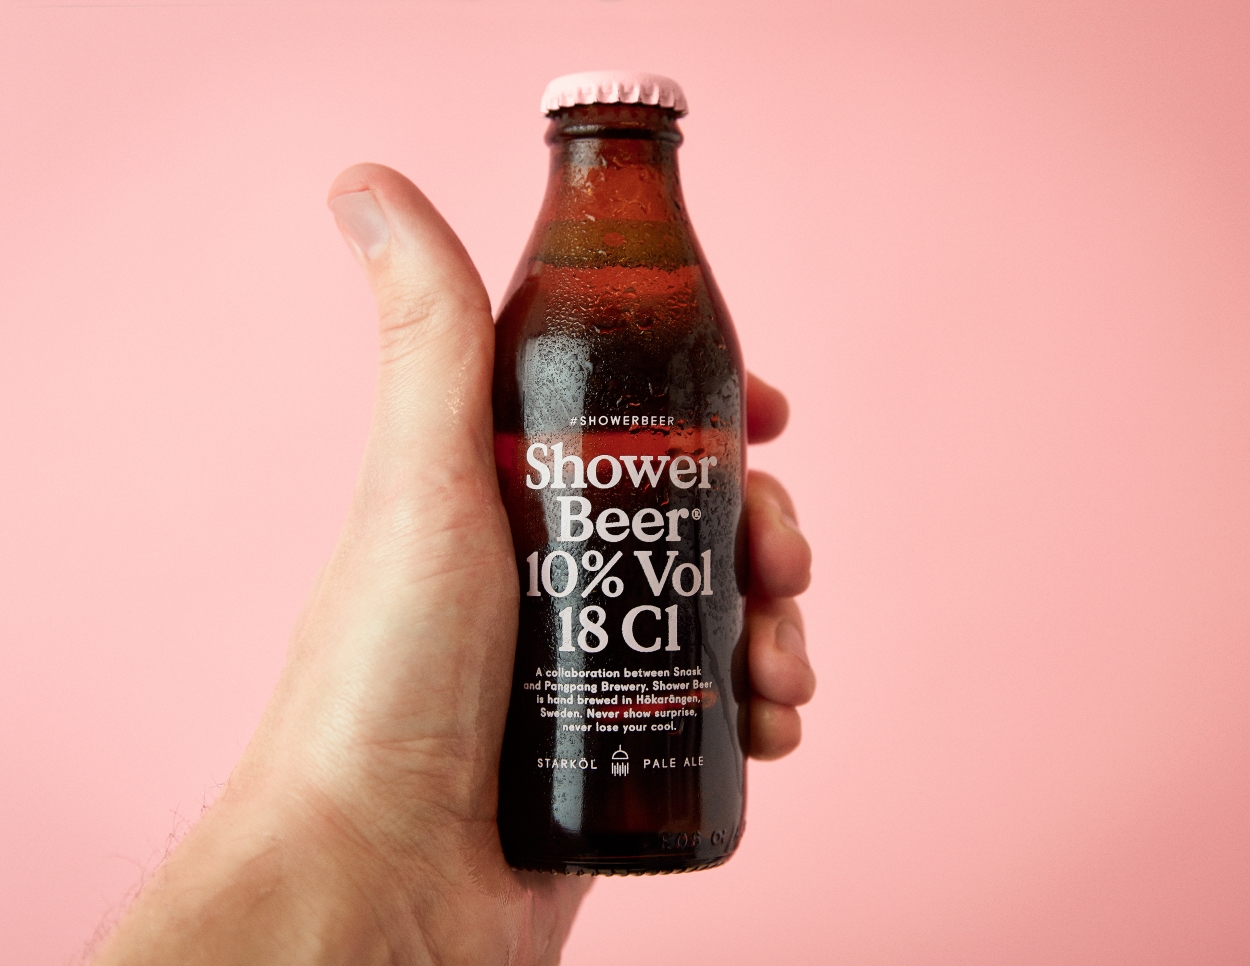 content_fubiz-shower-beer-snask-advertising-04